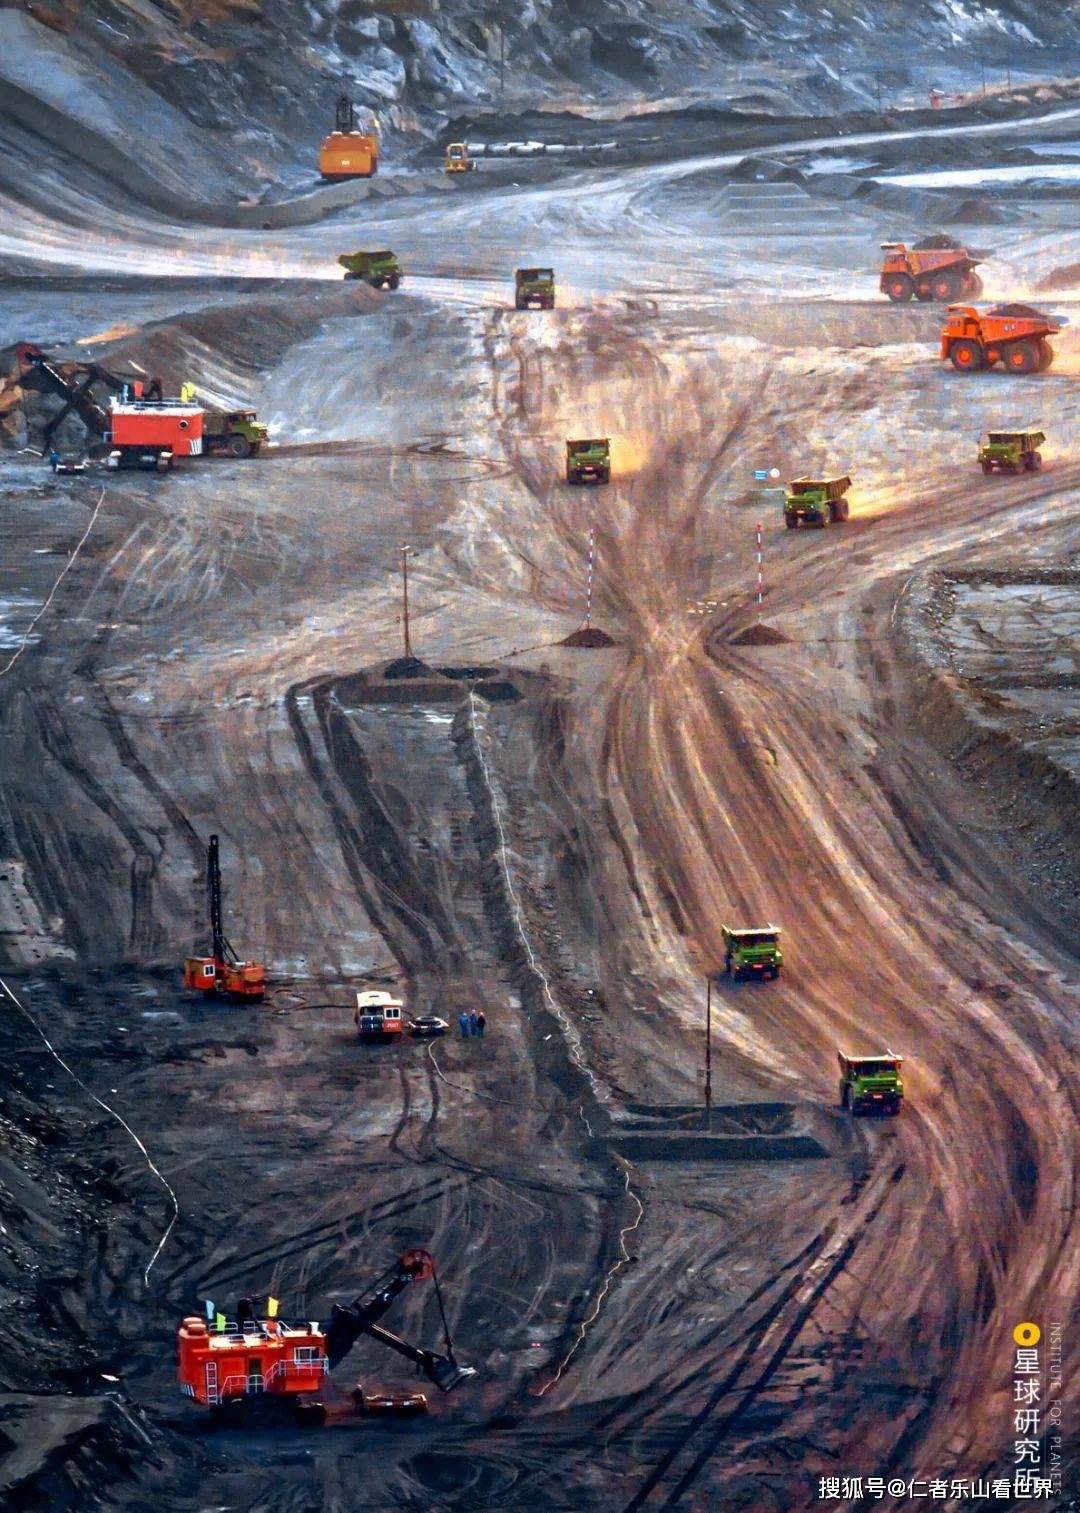 摄影师@飞猫先生)▼2014年内蒙古鄂尔多斯的哈尔乌素露天矿建成投产